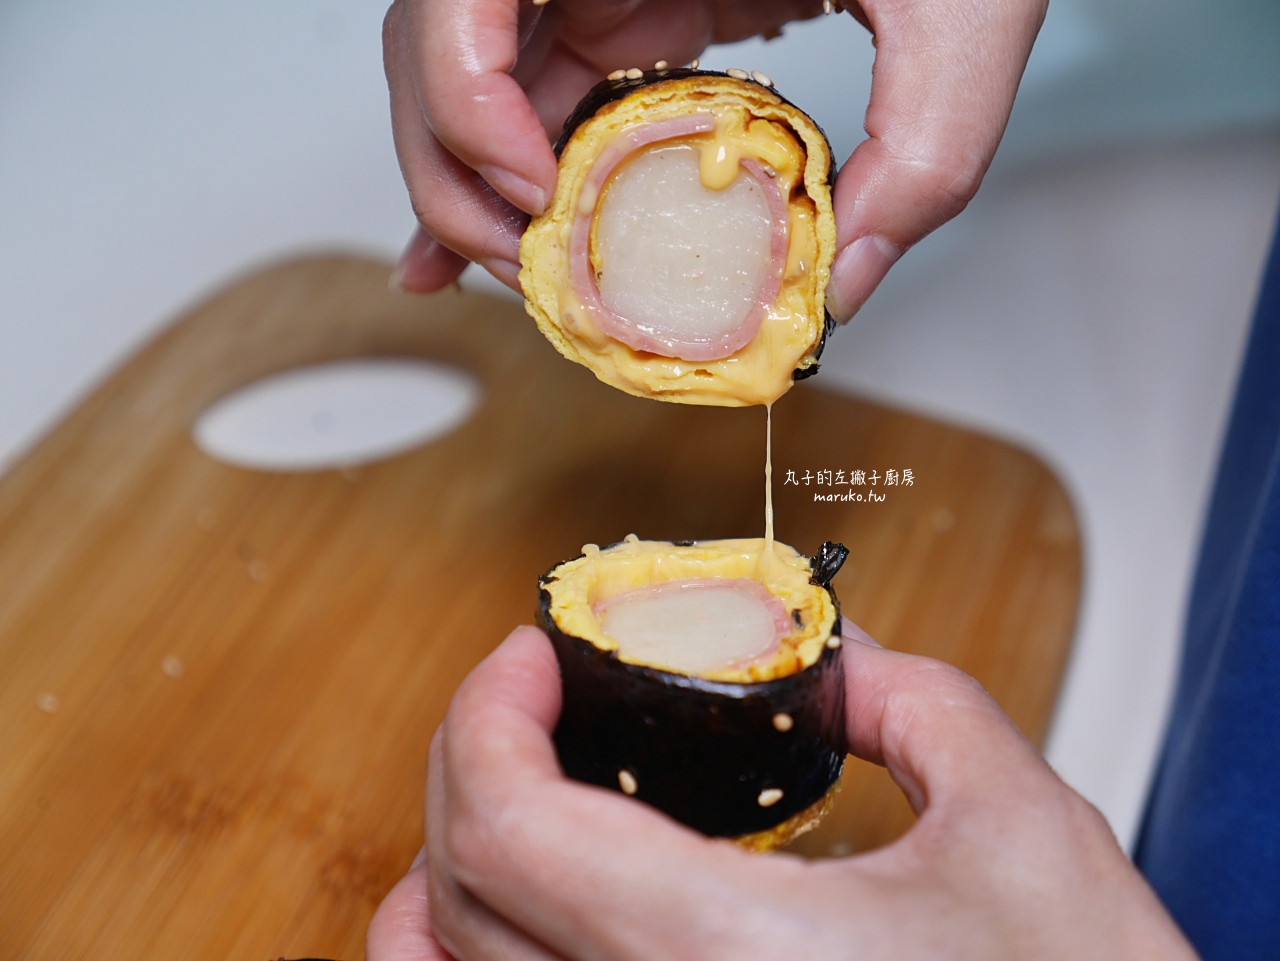 【食譜】韓式年糕煎蛋捲/二樣食材自製韓國年糕/韓式海苔捲做法 @Maruko與美食有個約會